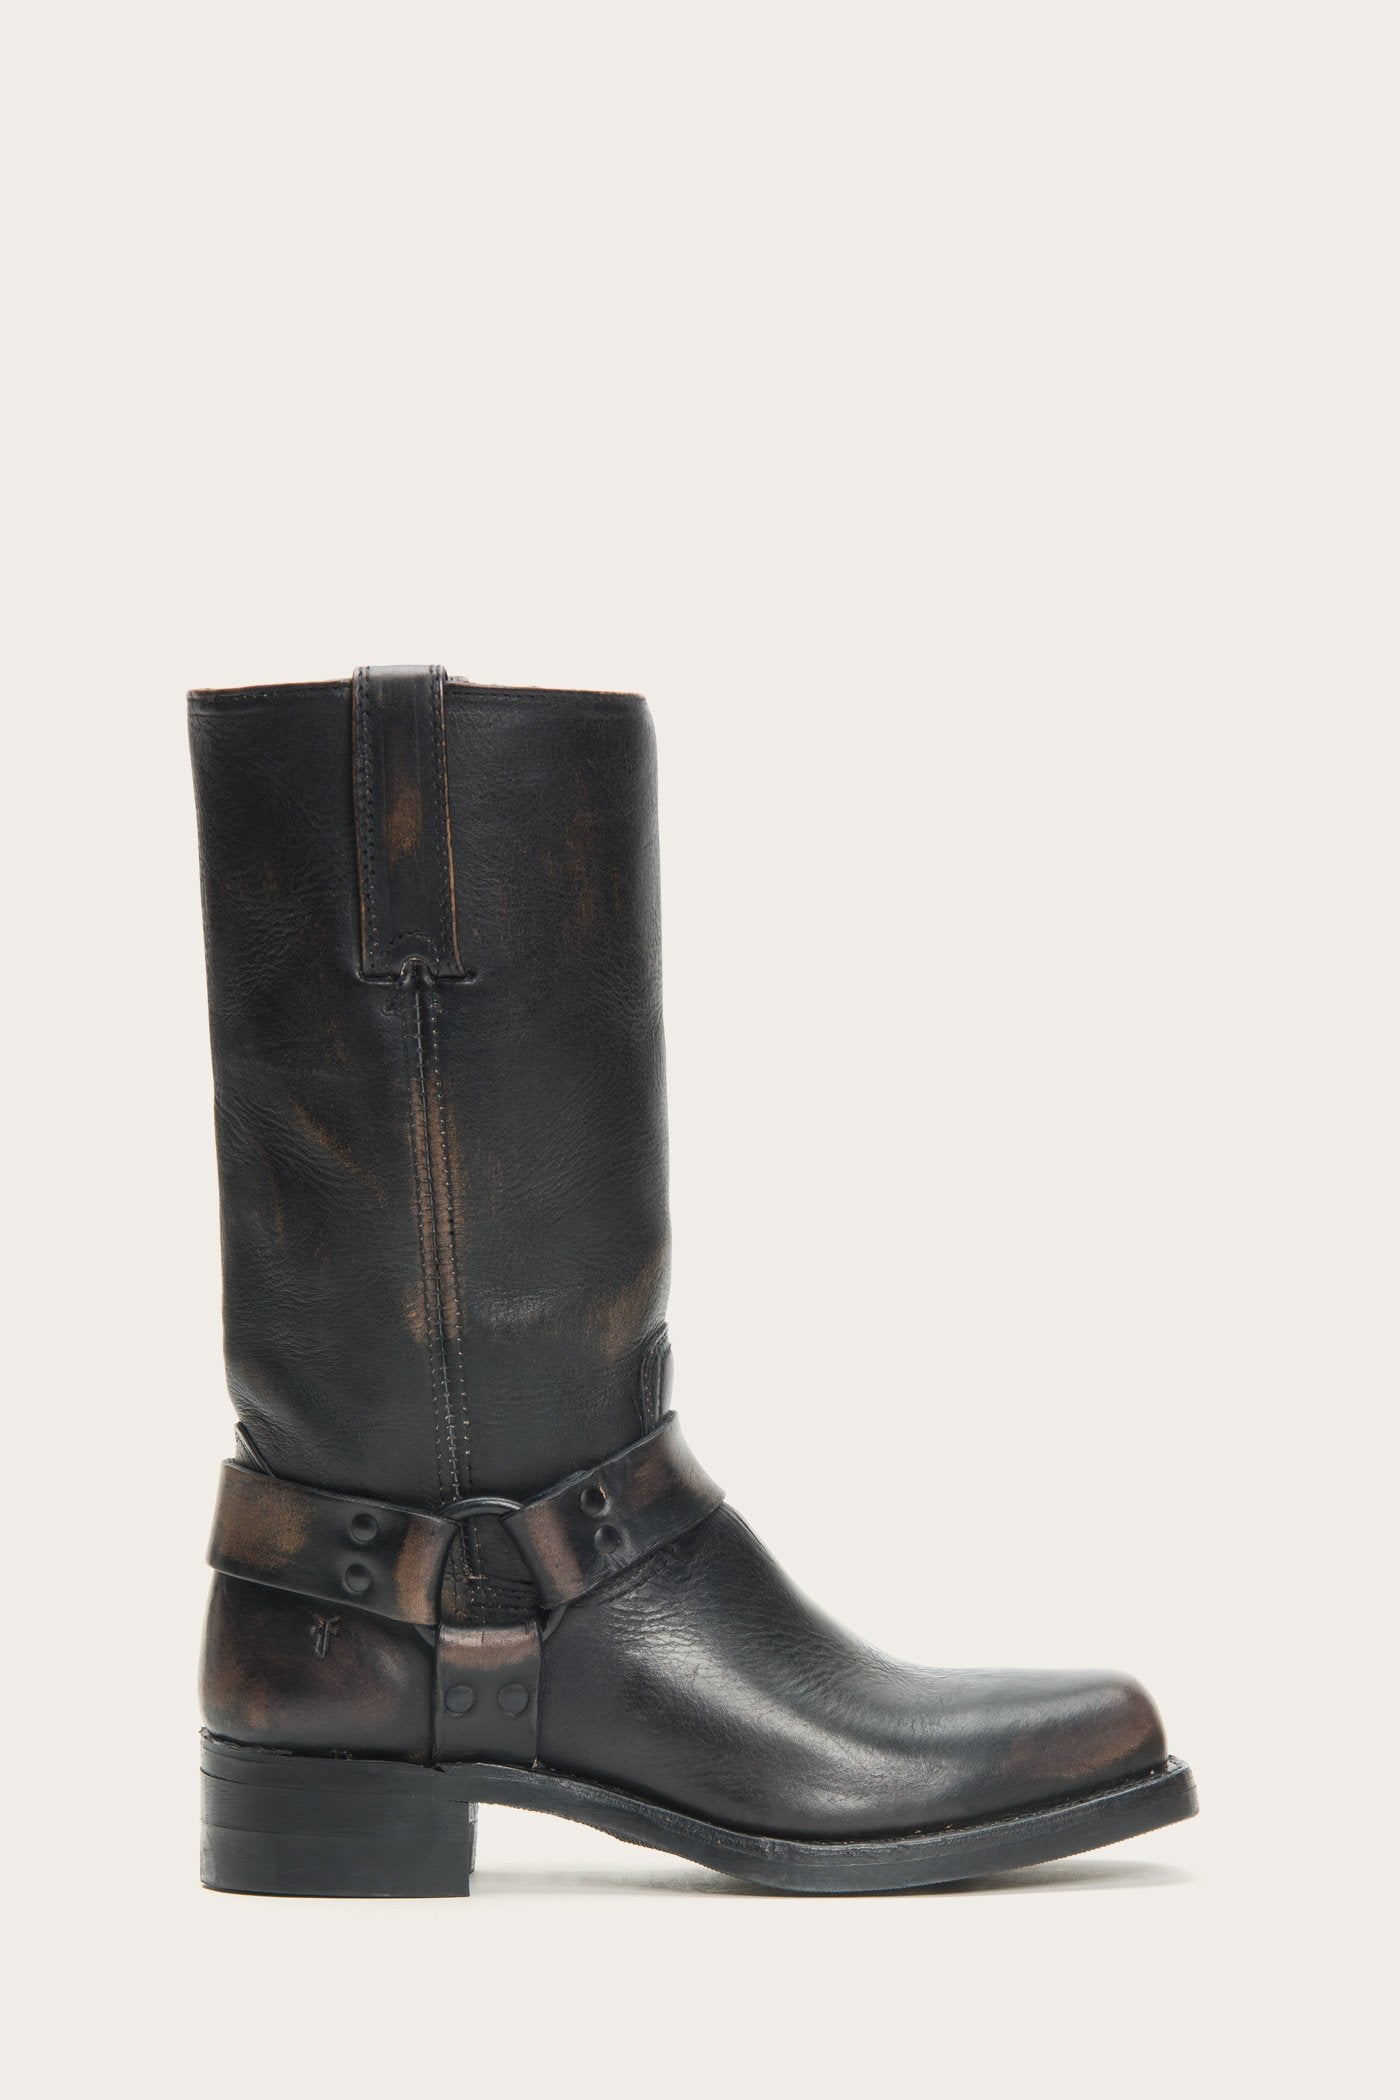 frye boots wide width